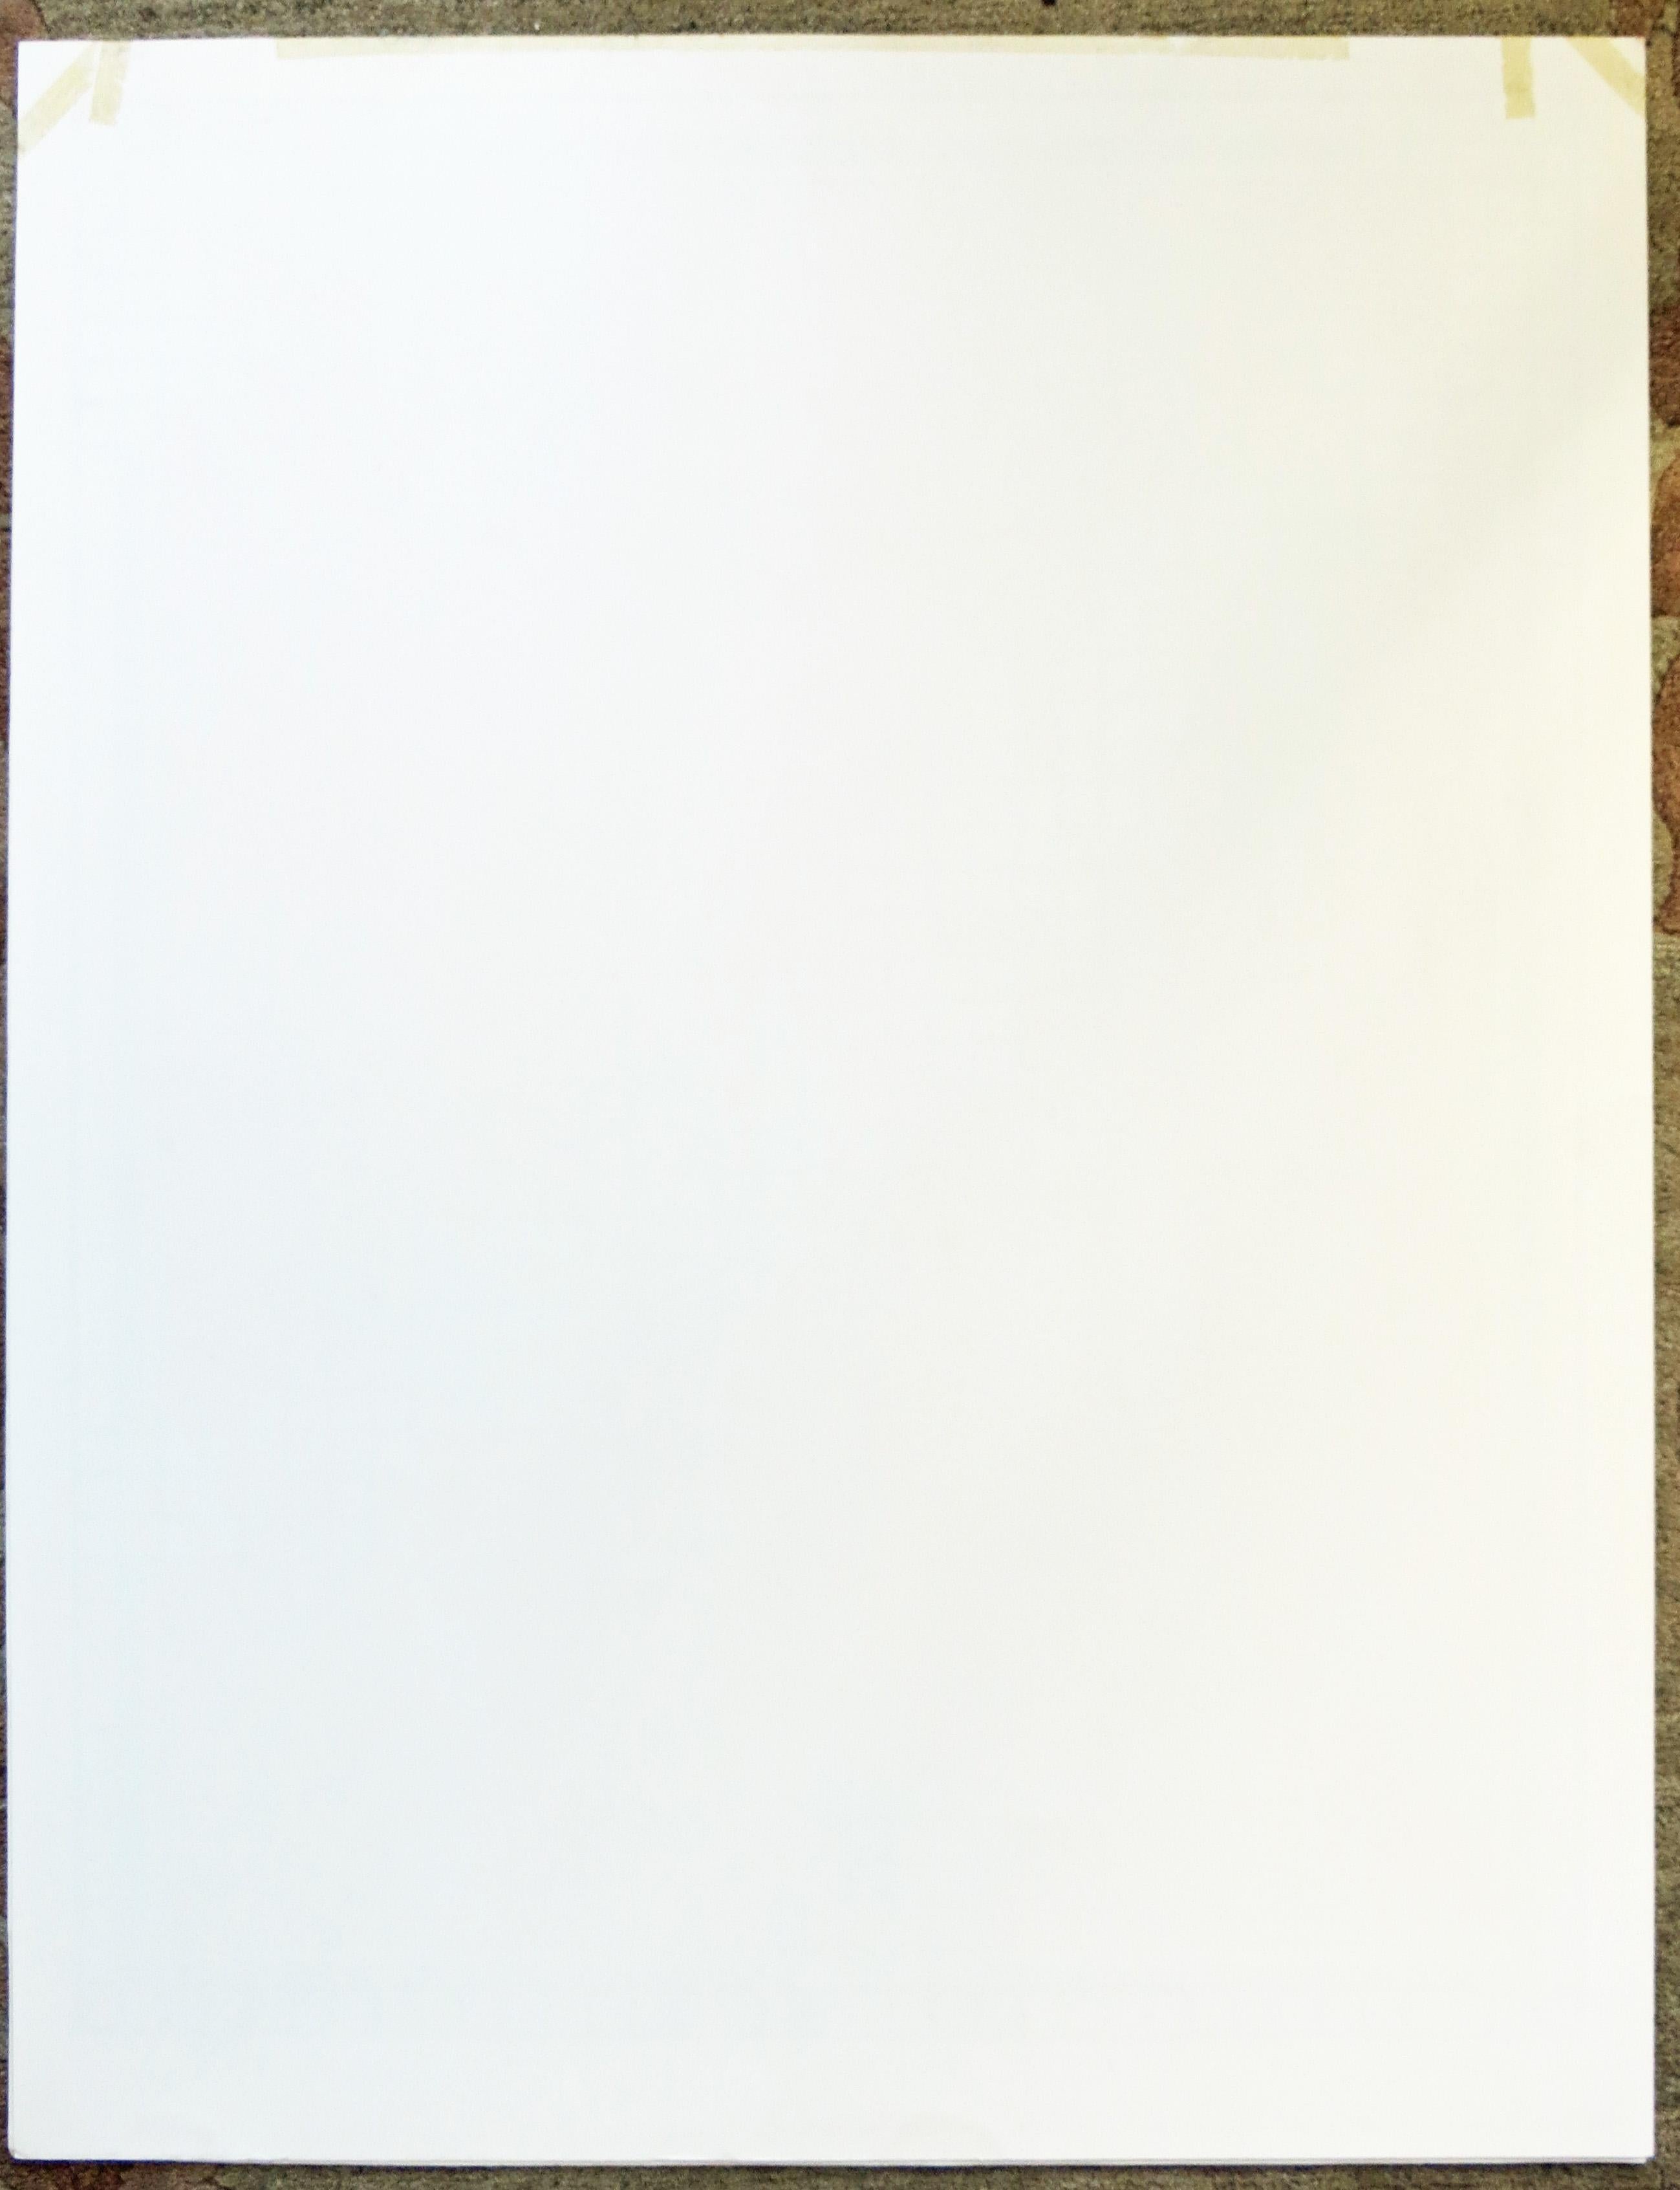 Artistics : Nicholas Krushenick, Américain (1929 - 1999) 
Titre : Untitled (Wire Mill Variant) 
Année : 1979 
Support : Sérigraphie, signée et numérotée au crayon Édition : 200, AP 30 
Format du papier : 34 po x 26 po (86,4 cm x 66,0 cm)
Non